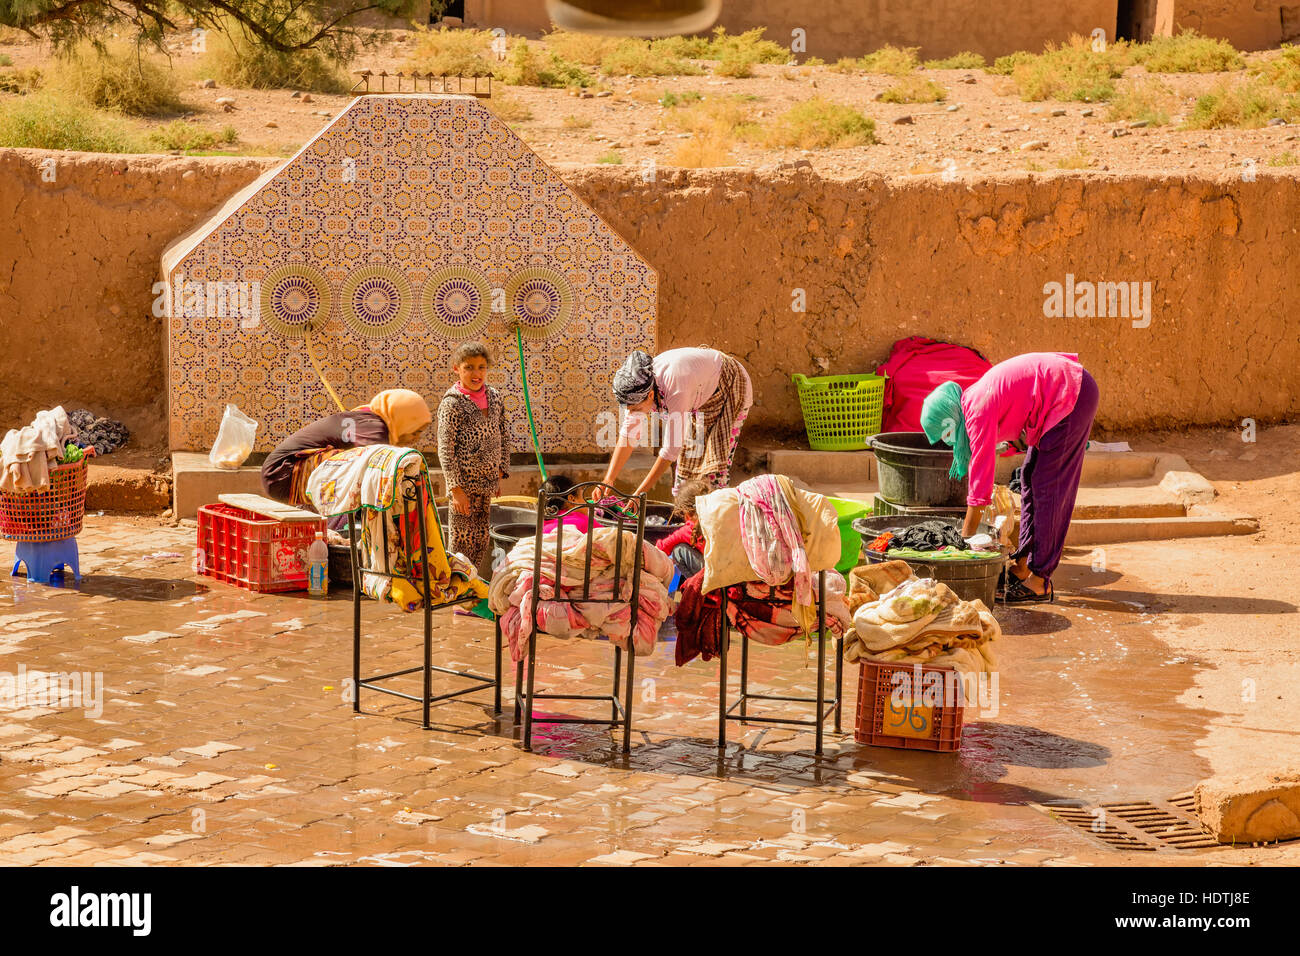 Une blanchisserie commune sur une rue de medina ouarzazate, Maroc. Lave-linge n'est pas un processus normal d'une pauvre famille marocaine. Banque D'Images